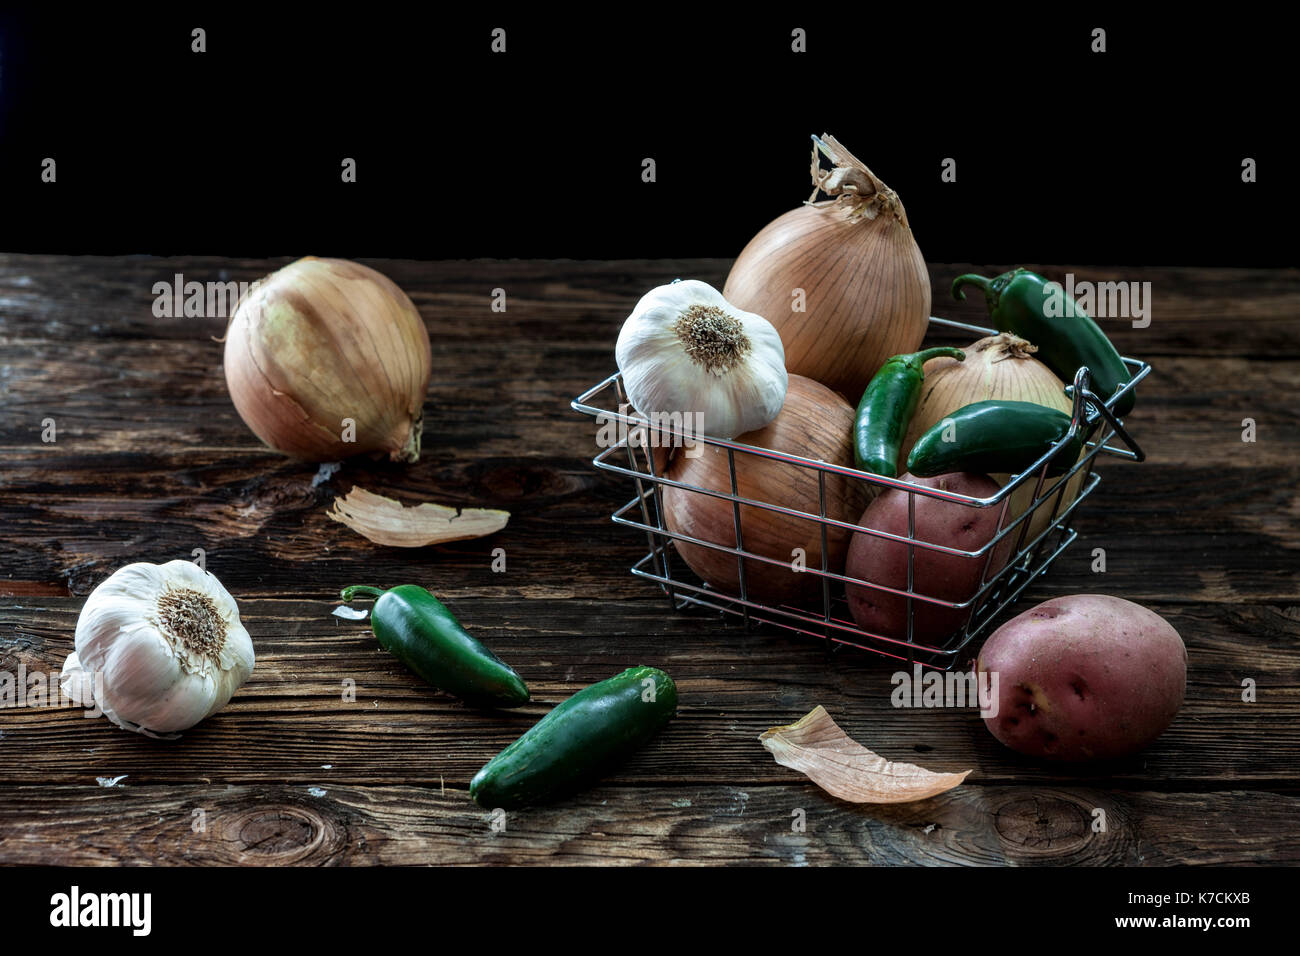 Un bodegón fotografía de surtido de verduras como el ajo, patatas, pimientos y cebollas. Foto de stock